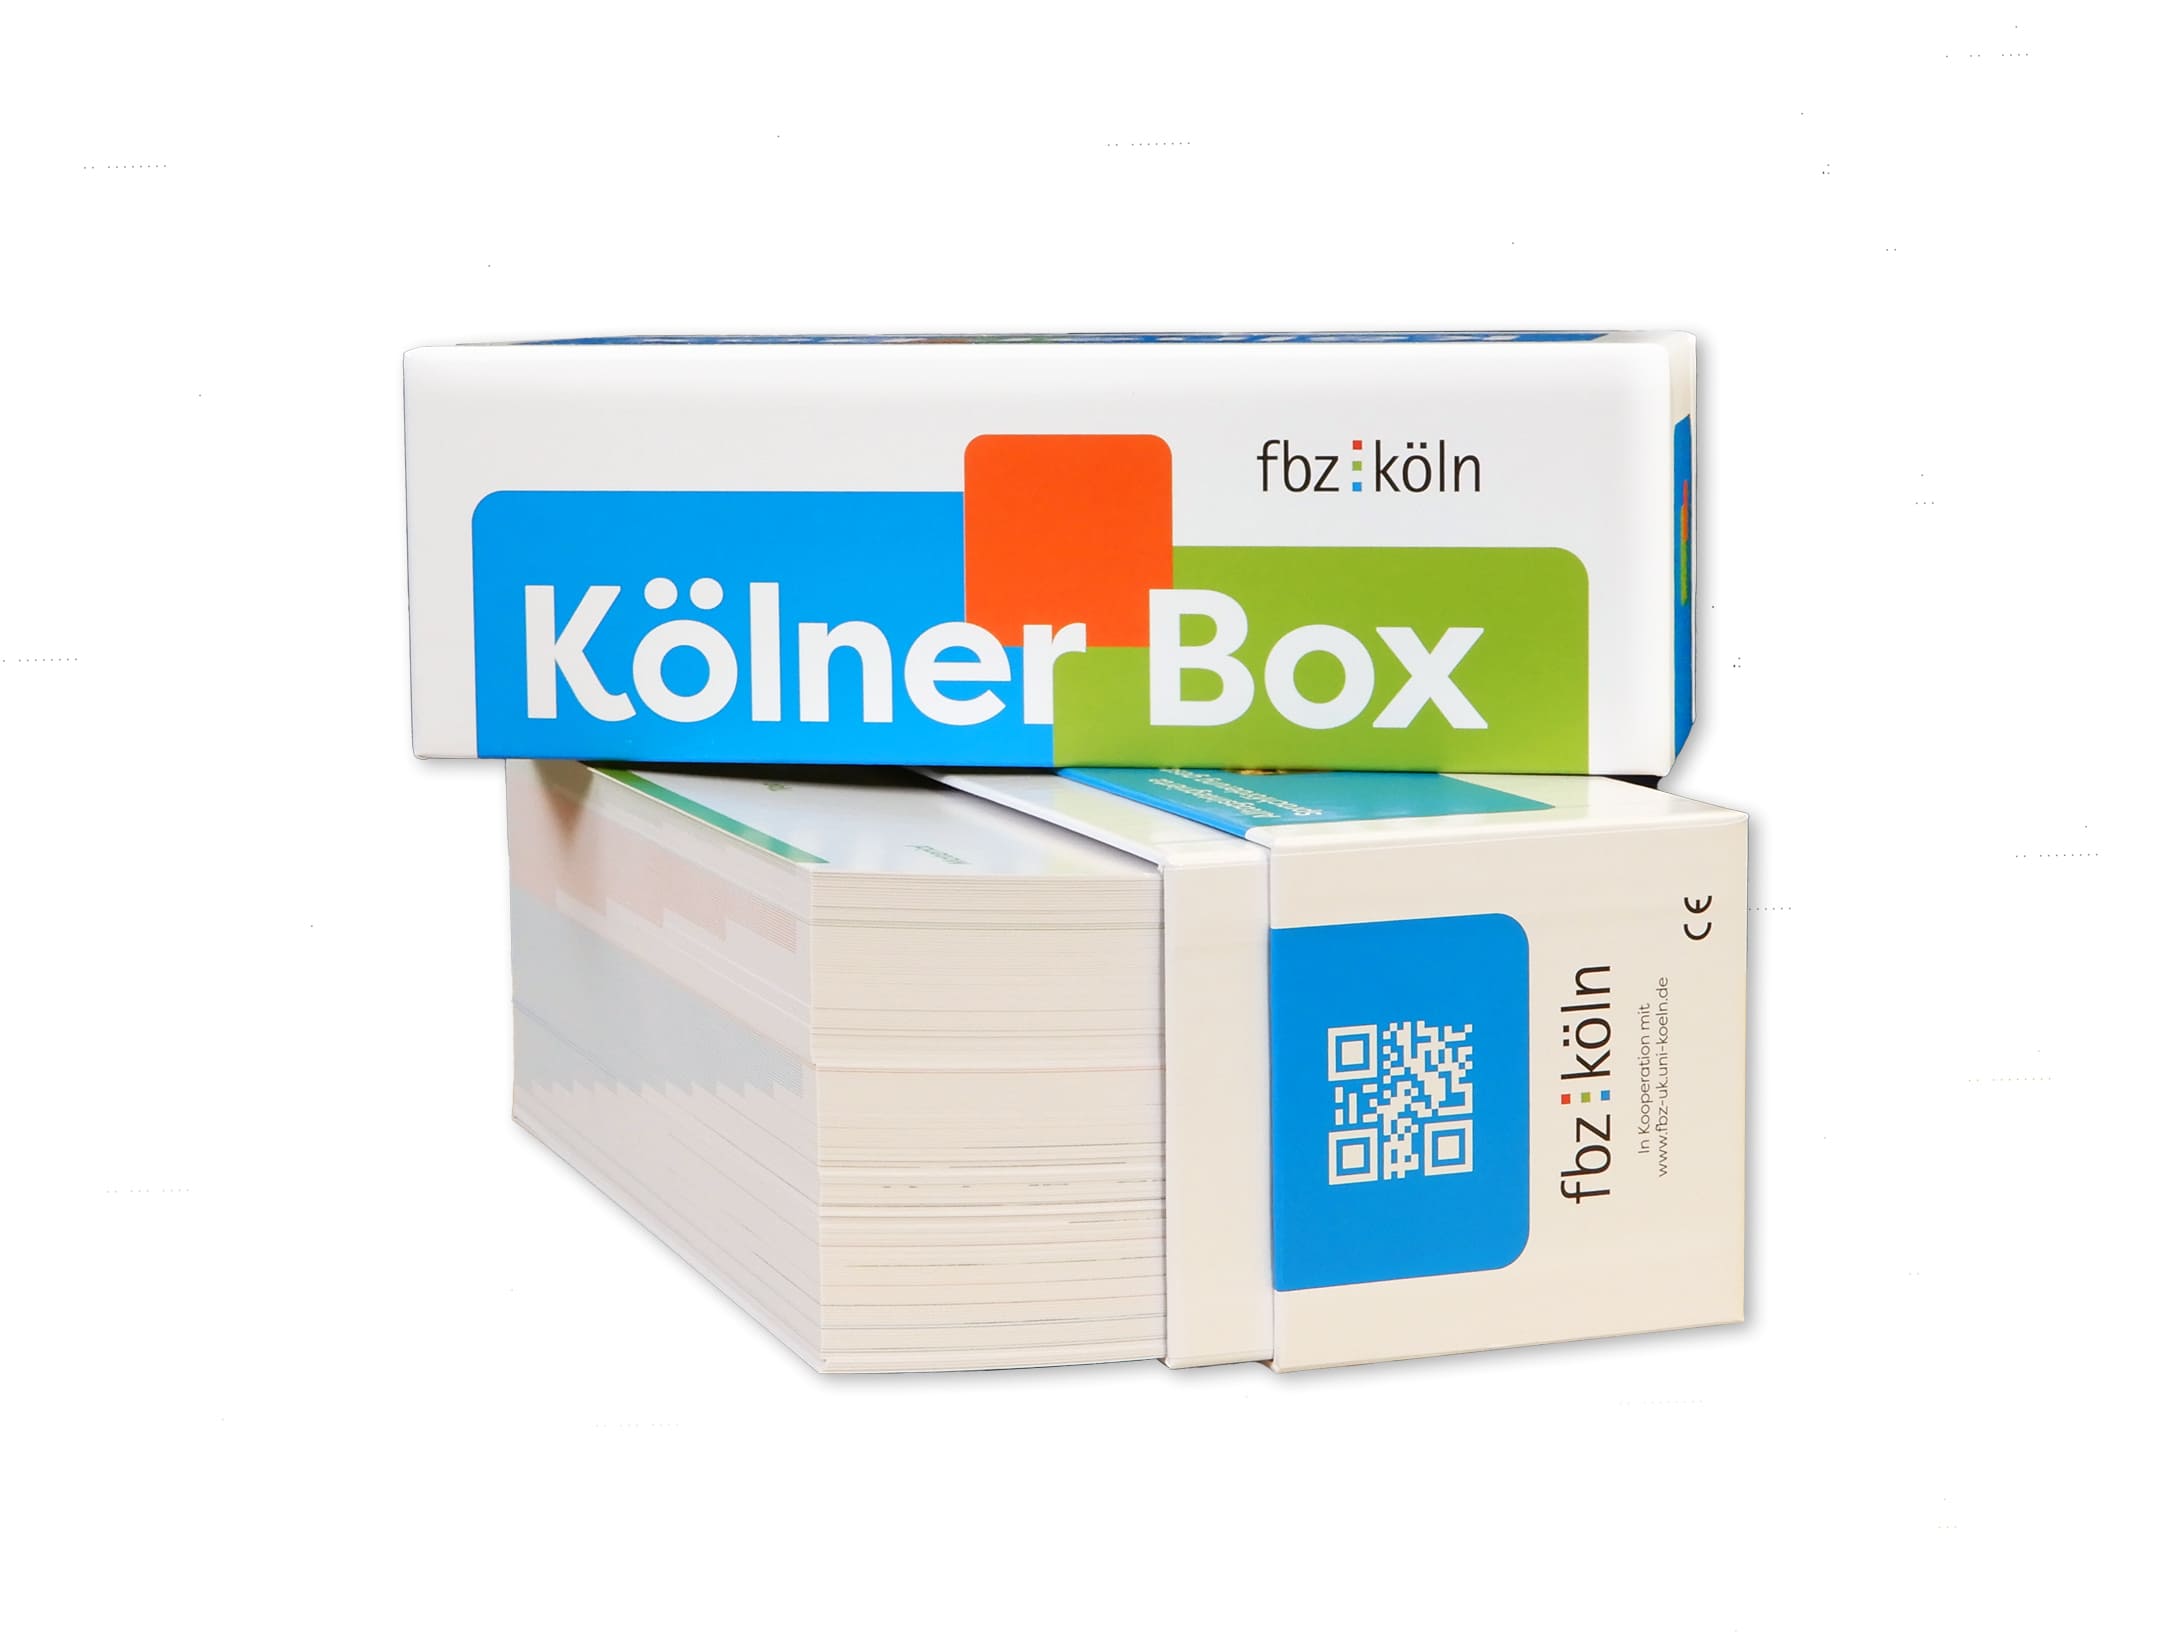 Kölner Box